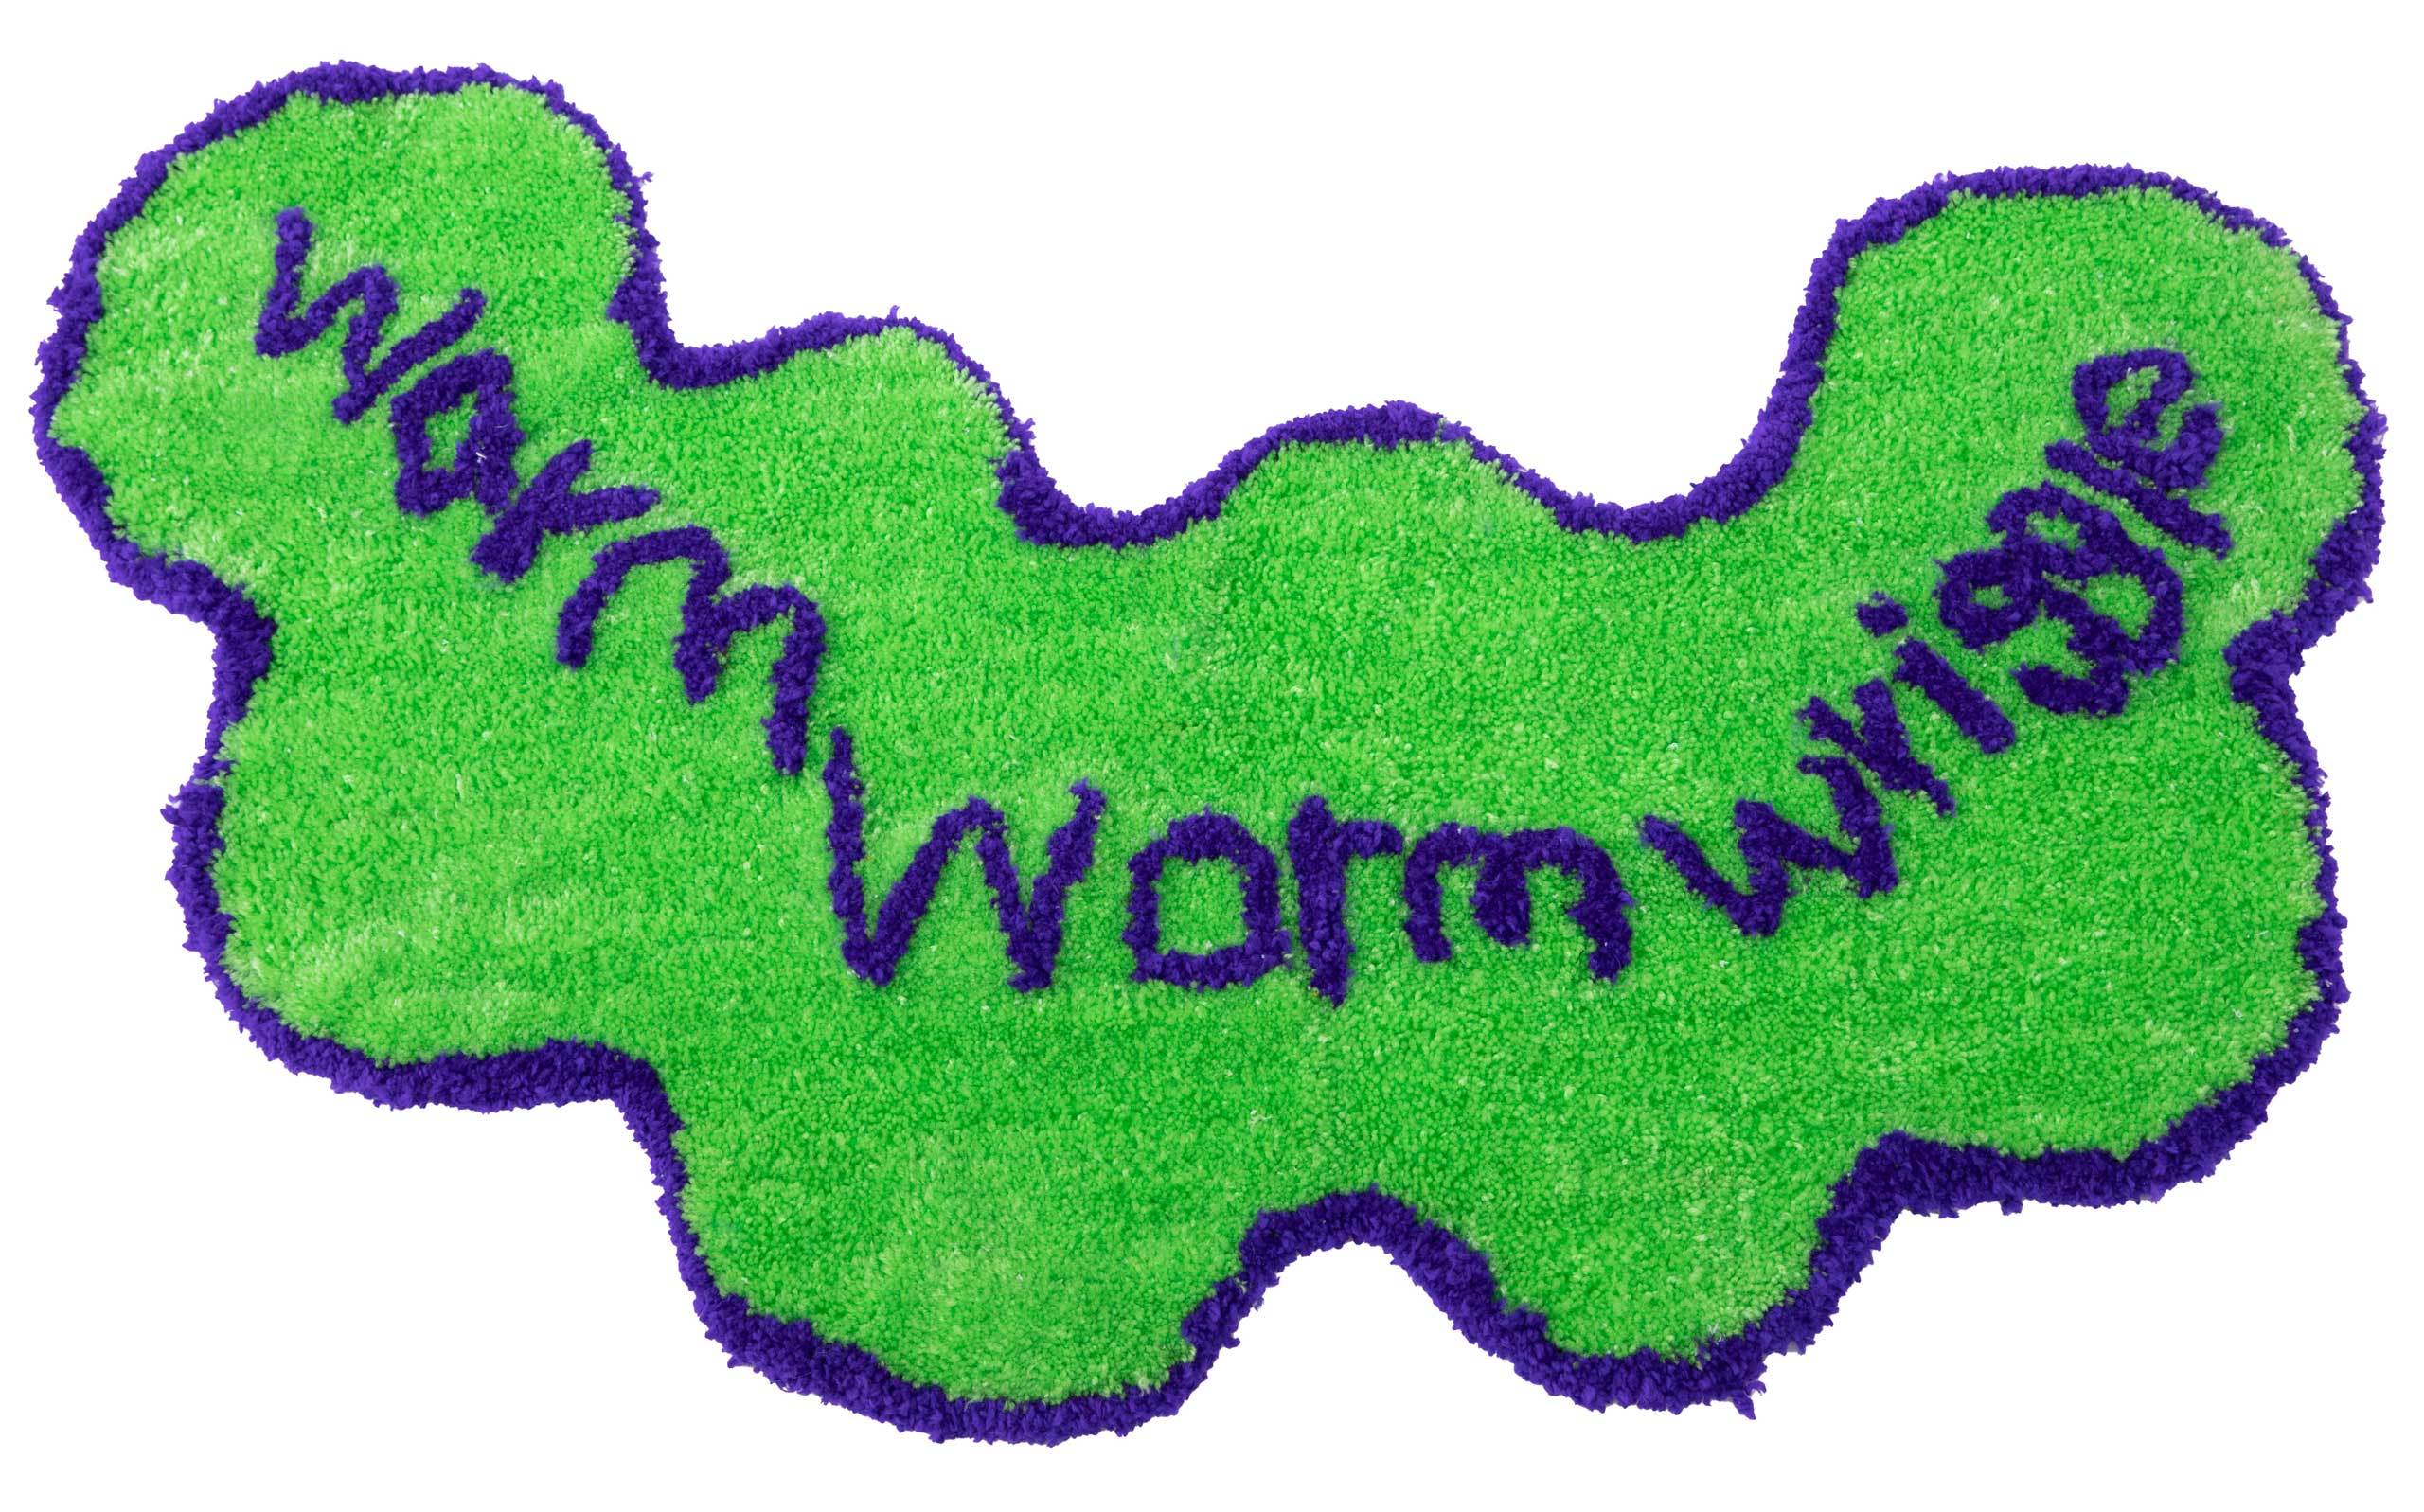 초록색 카펫 위에 남색으로 warm-worm-wriggle 이 그려져있다.